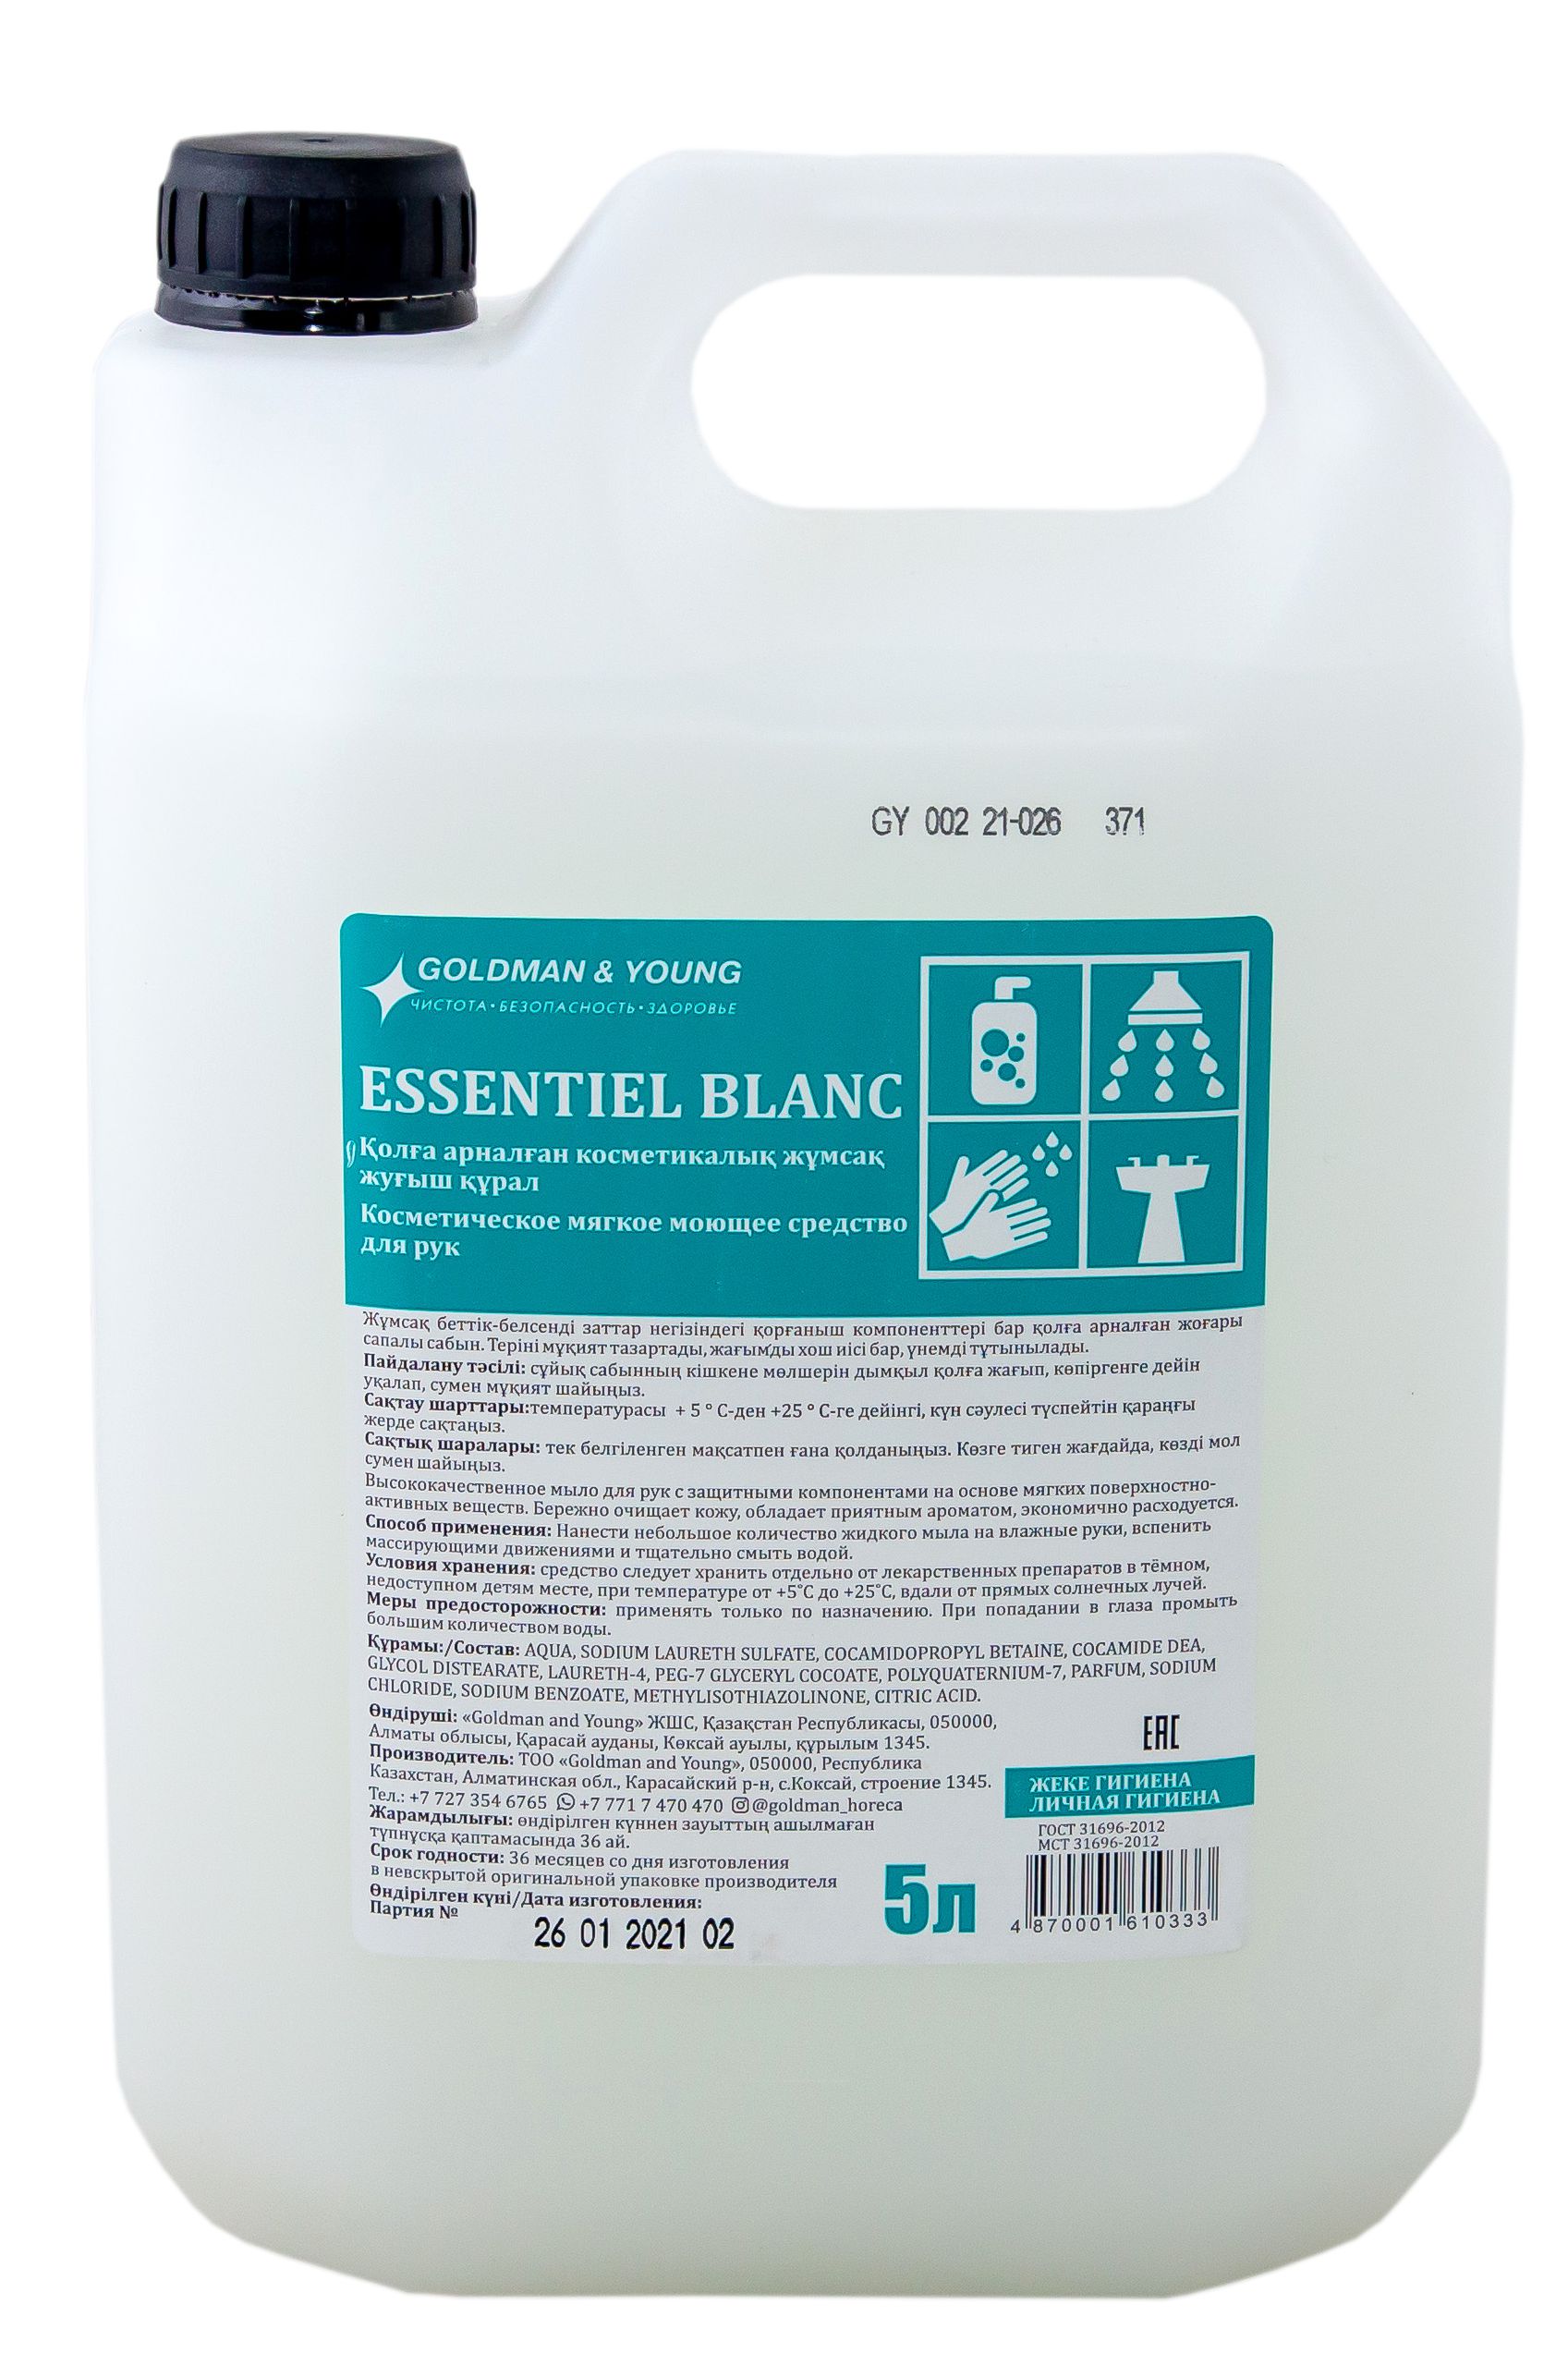 020202 Косметическое мягкое моющее средство для рук Essentiel Blanc - 5 л